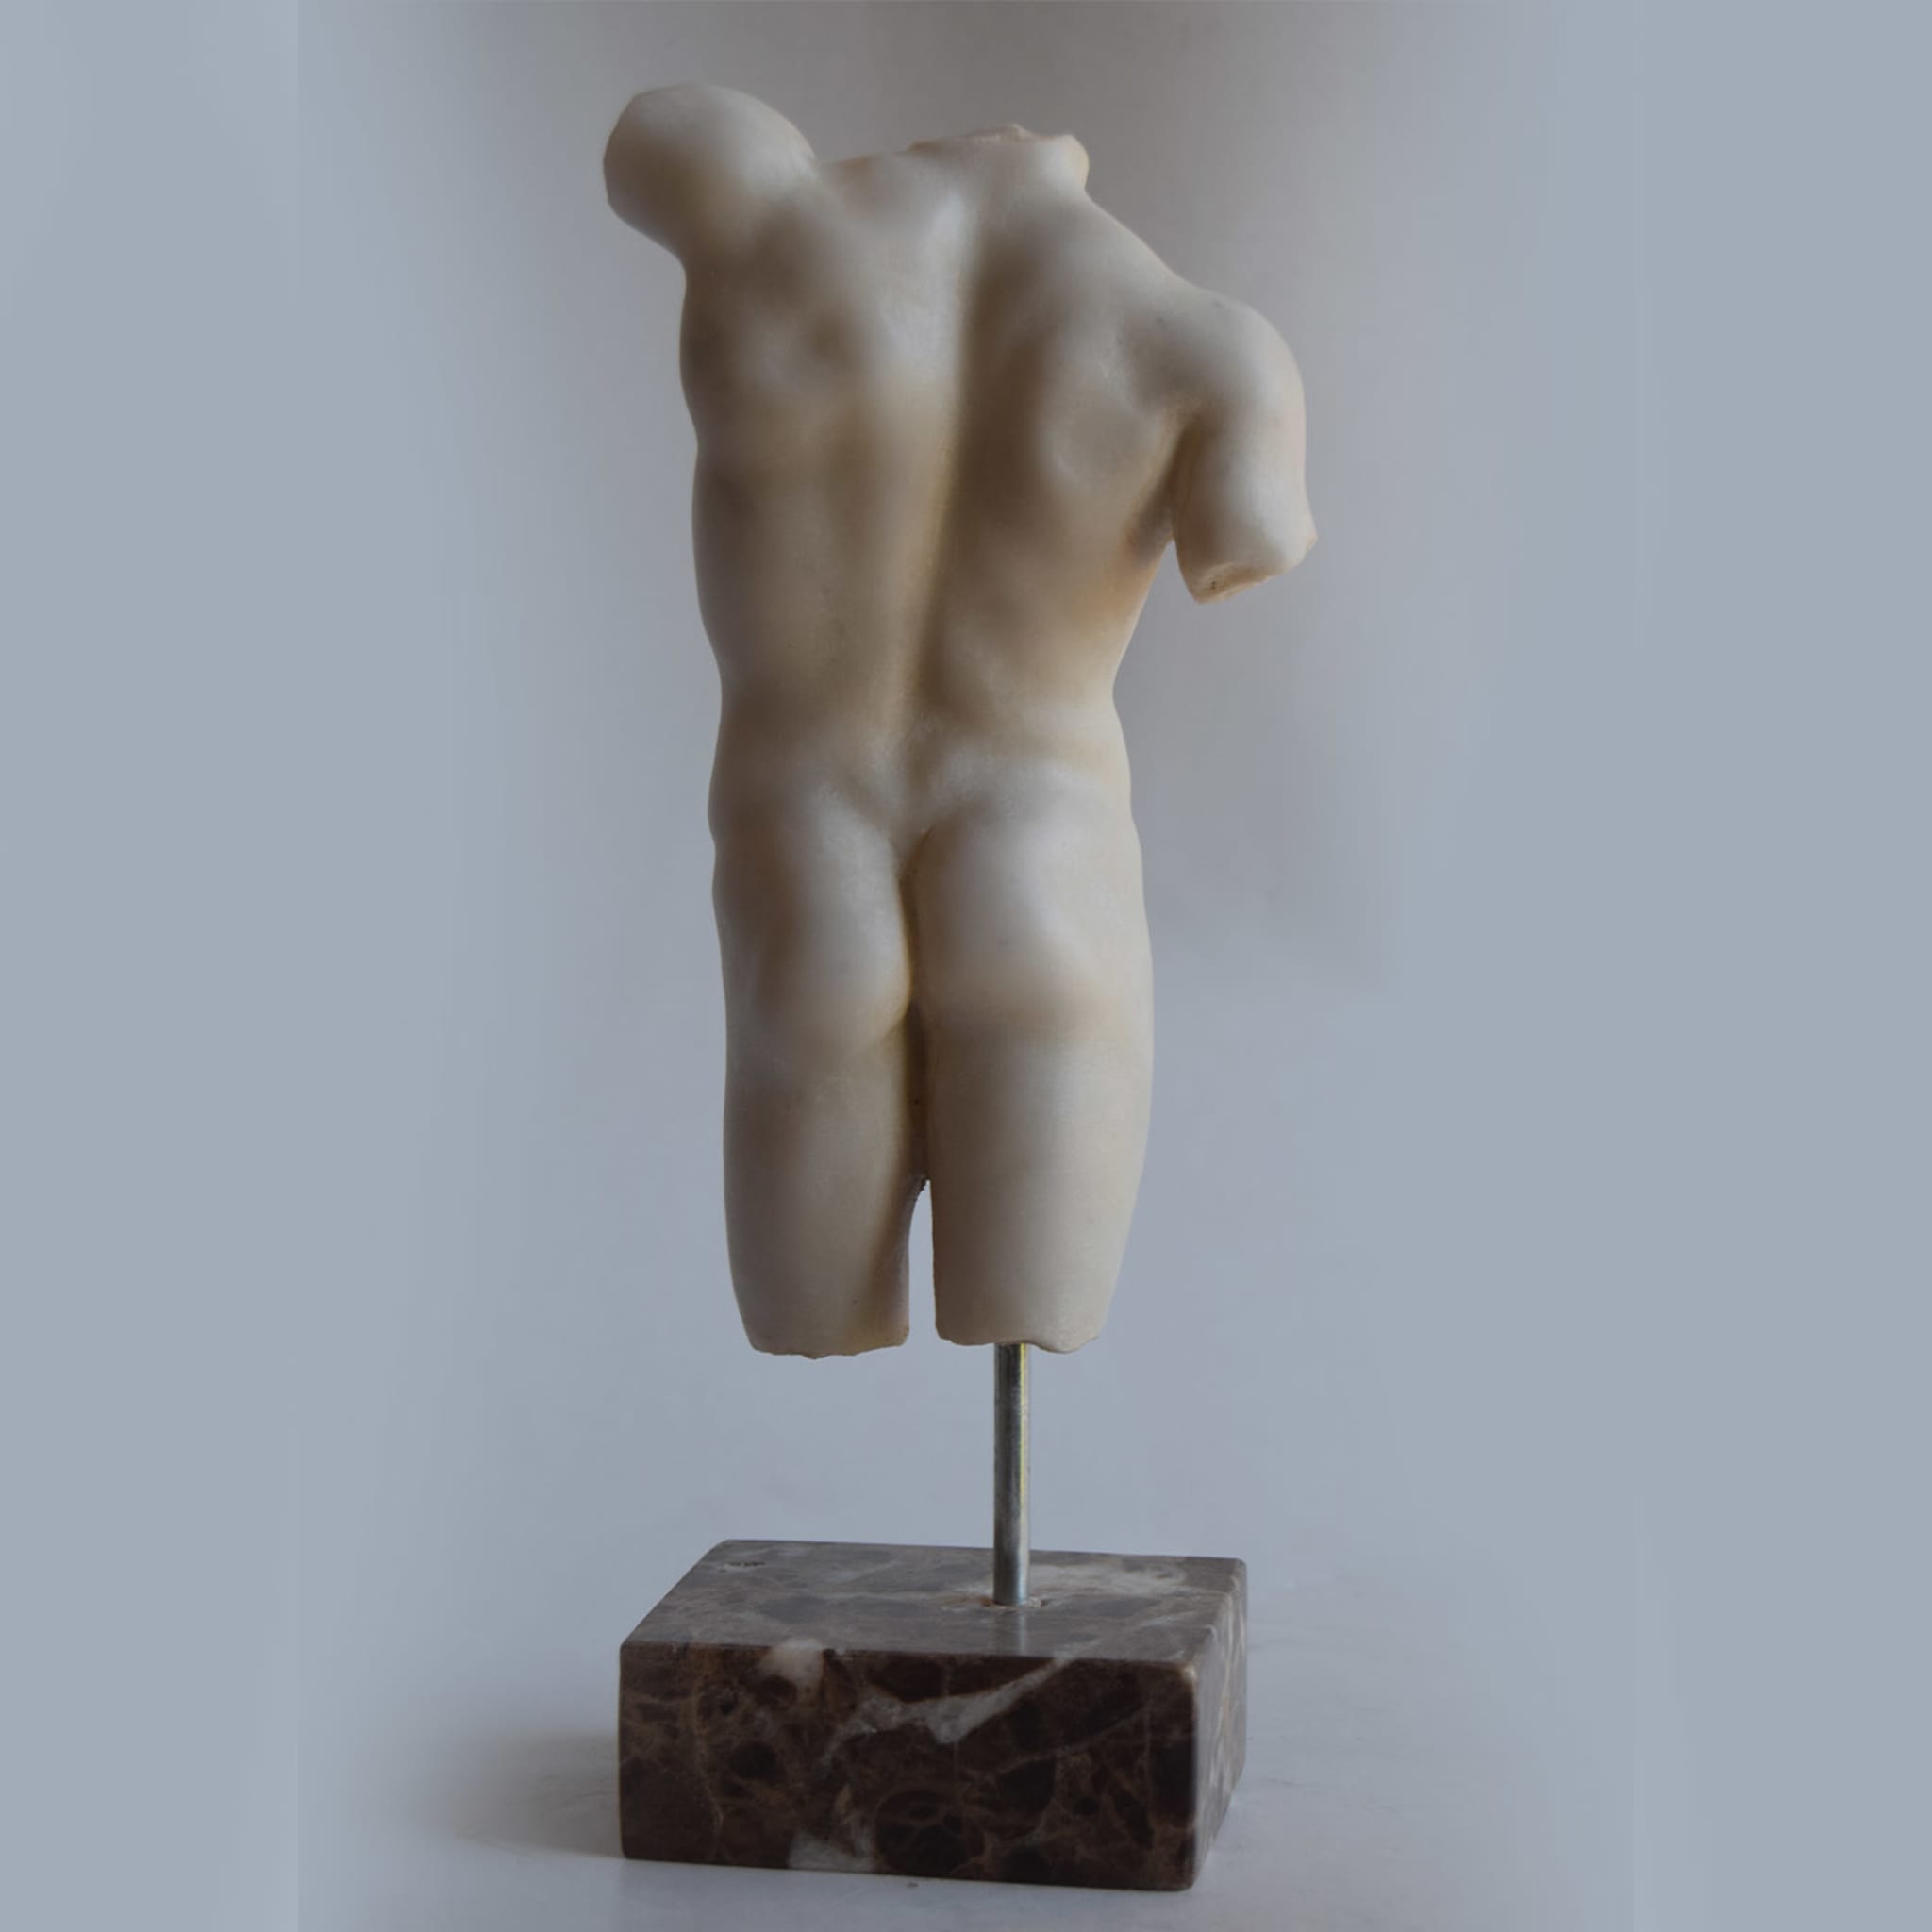 Small Marble Male Torso Sculpture - Alternative view 1